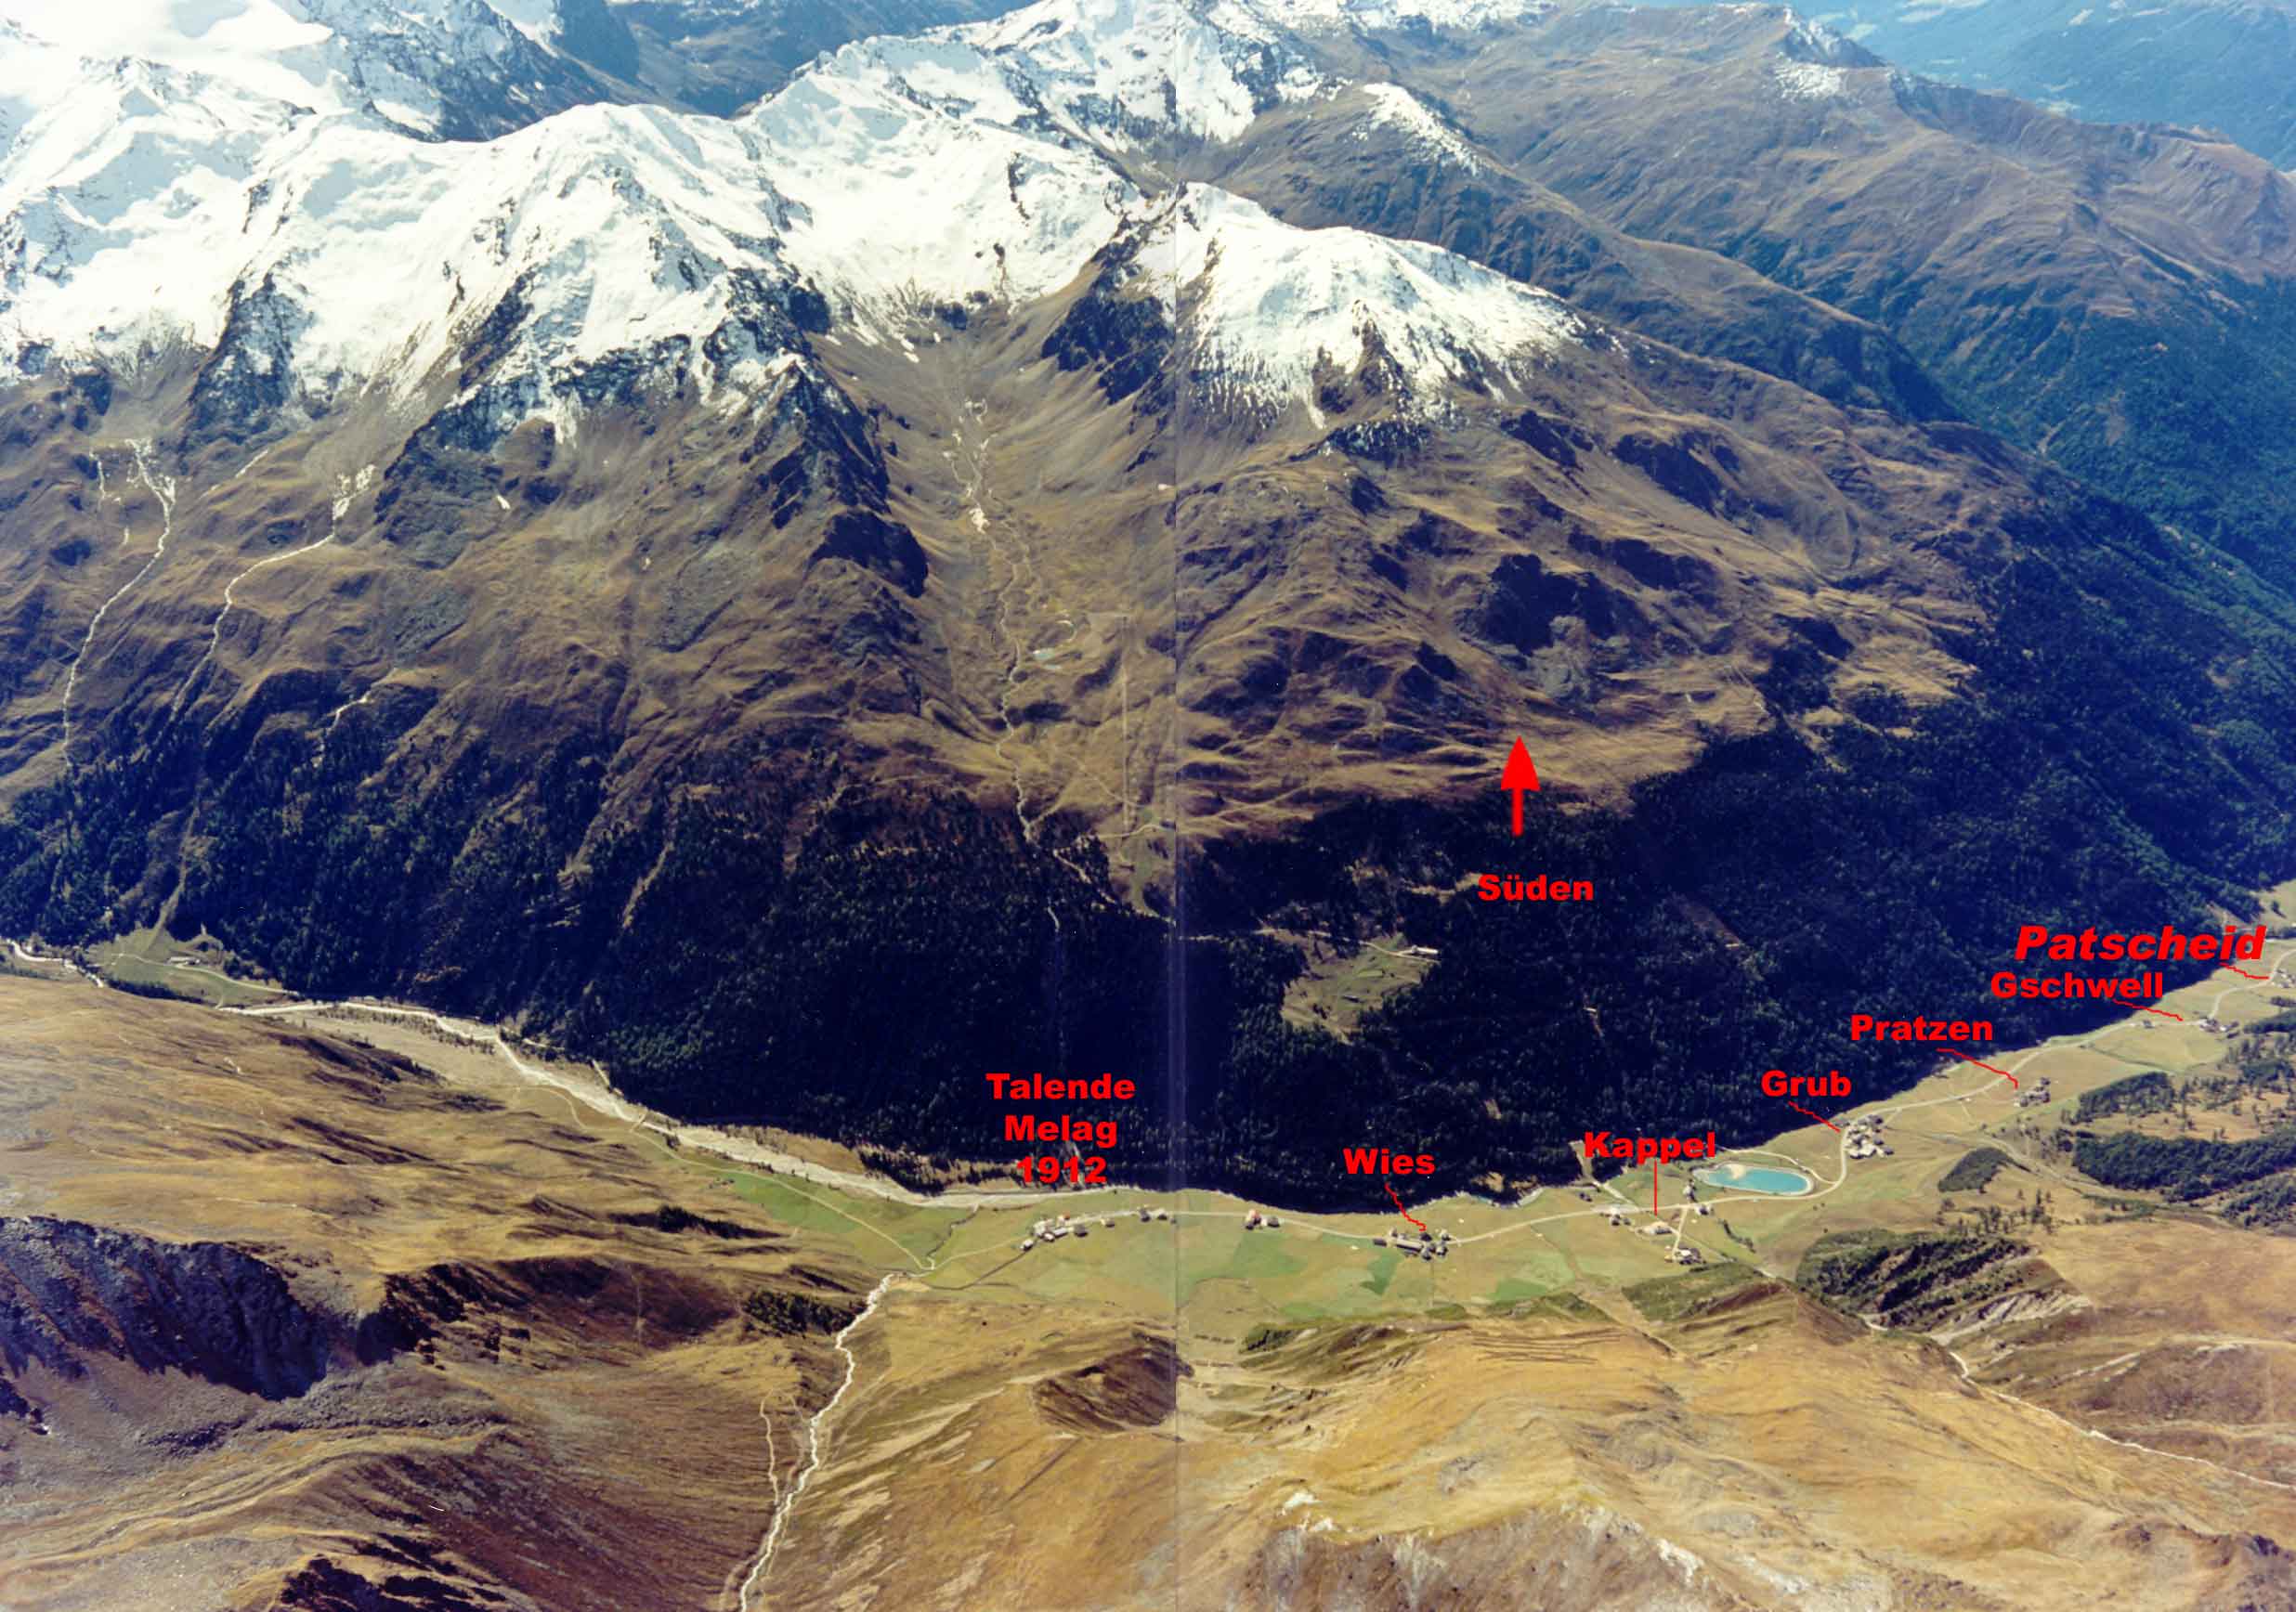 Luftaufnahme vom Lantauferer Tal mit der Lage der einzelnen Höfe: Melag, Wies, Kappl, Grub, Pratzen, Gschwell und Patscheid